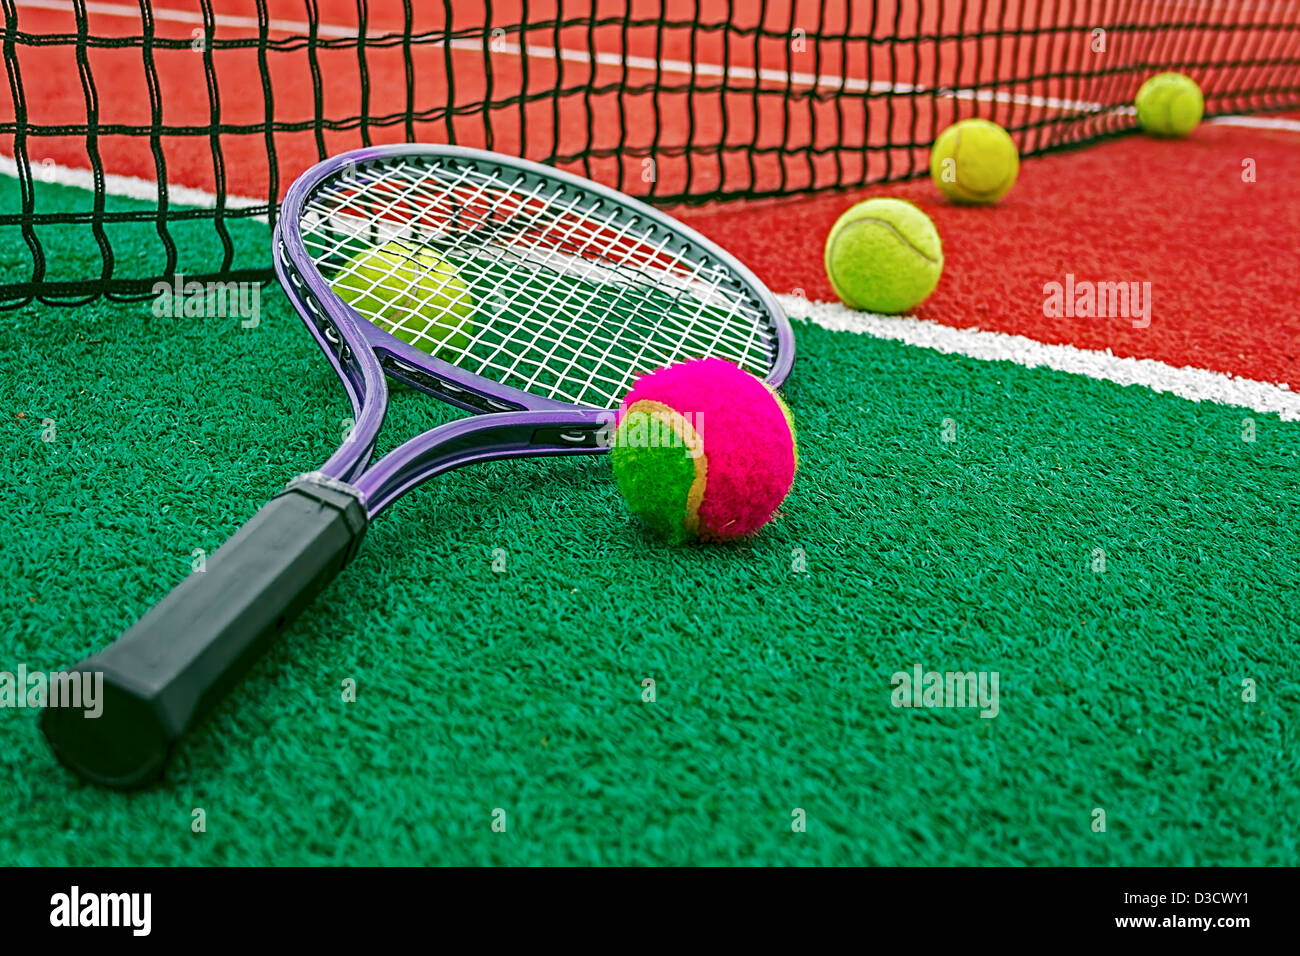 Ball und Tennis Schläger um das Netz auf einem synthetischen Feld angeordnet. Stockfoto